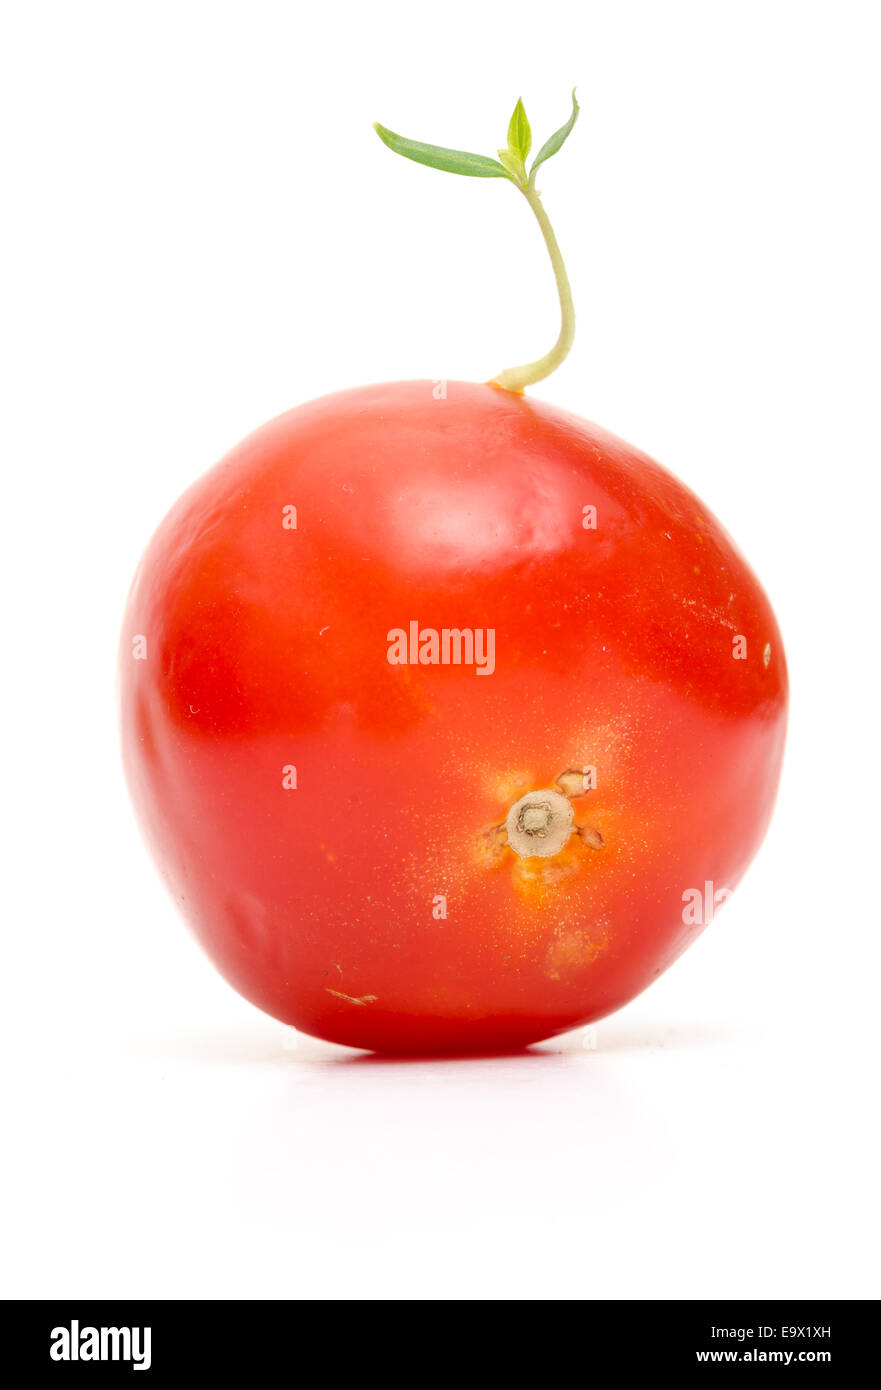 Une graine de tomate a germé alors que toujours dans le fruit. Banque D'Images